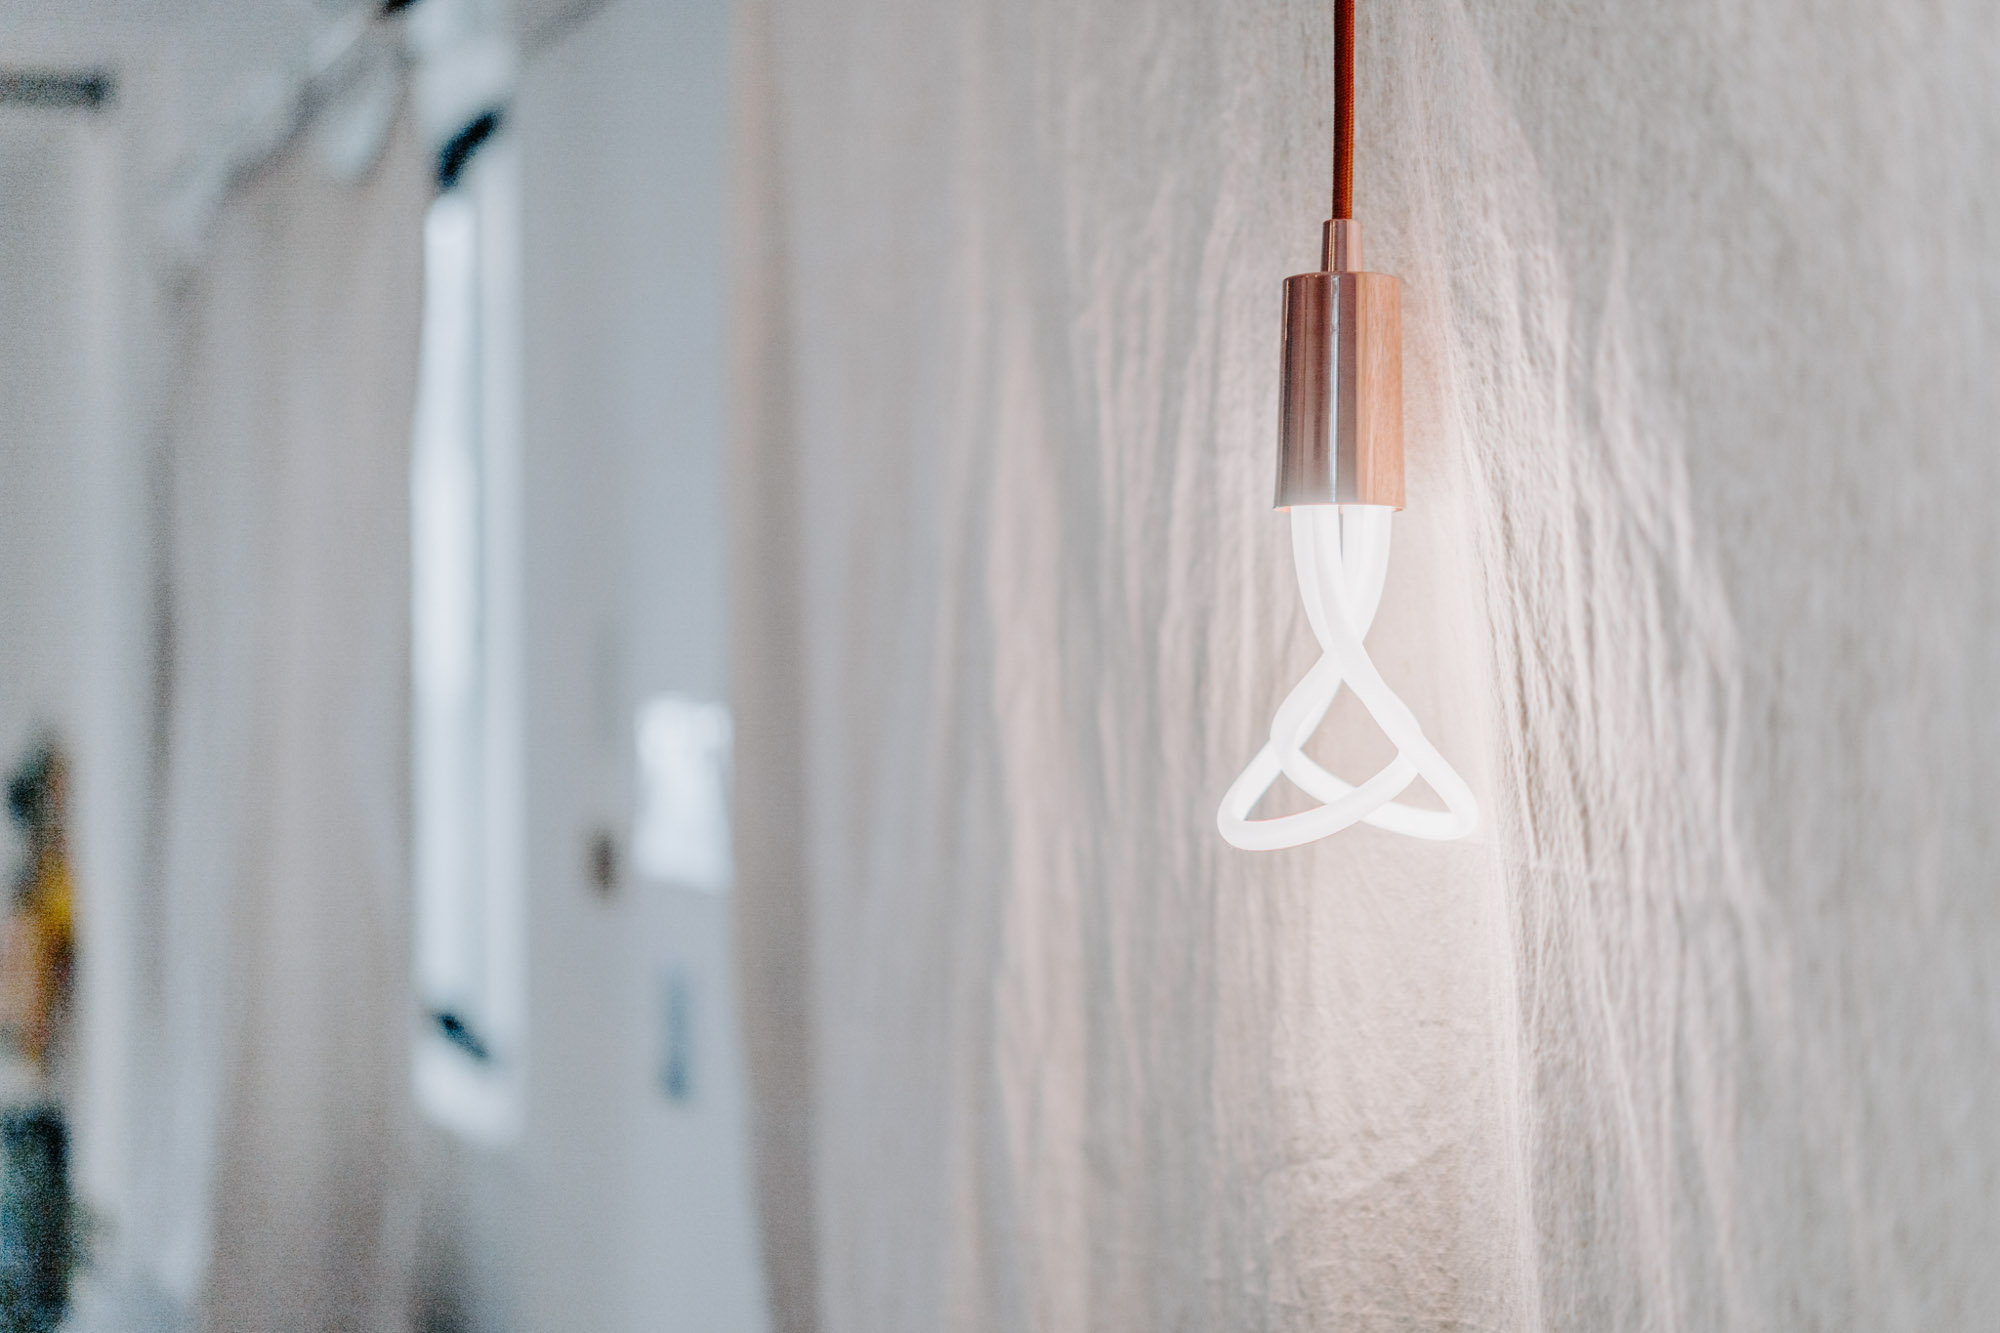 飾りつつ実用性もあるライトも、お部屋のあちこちに。こちらは形が美しいプルーメンのLED電球。